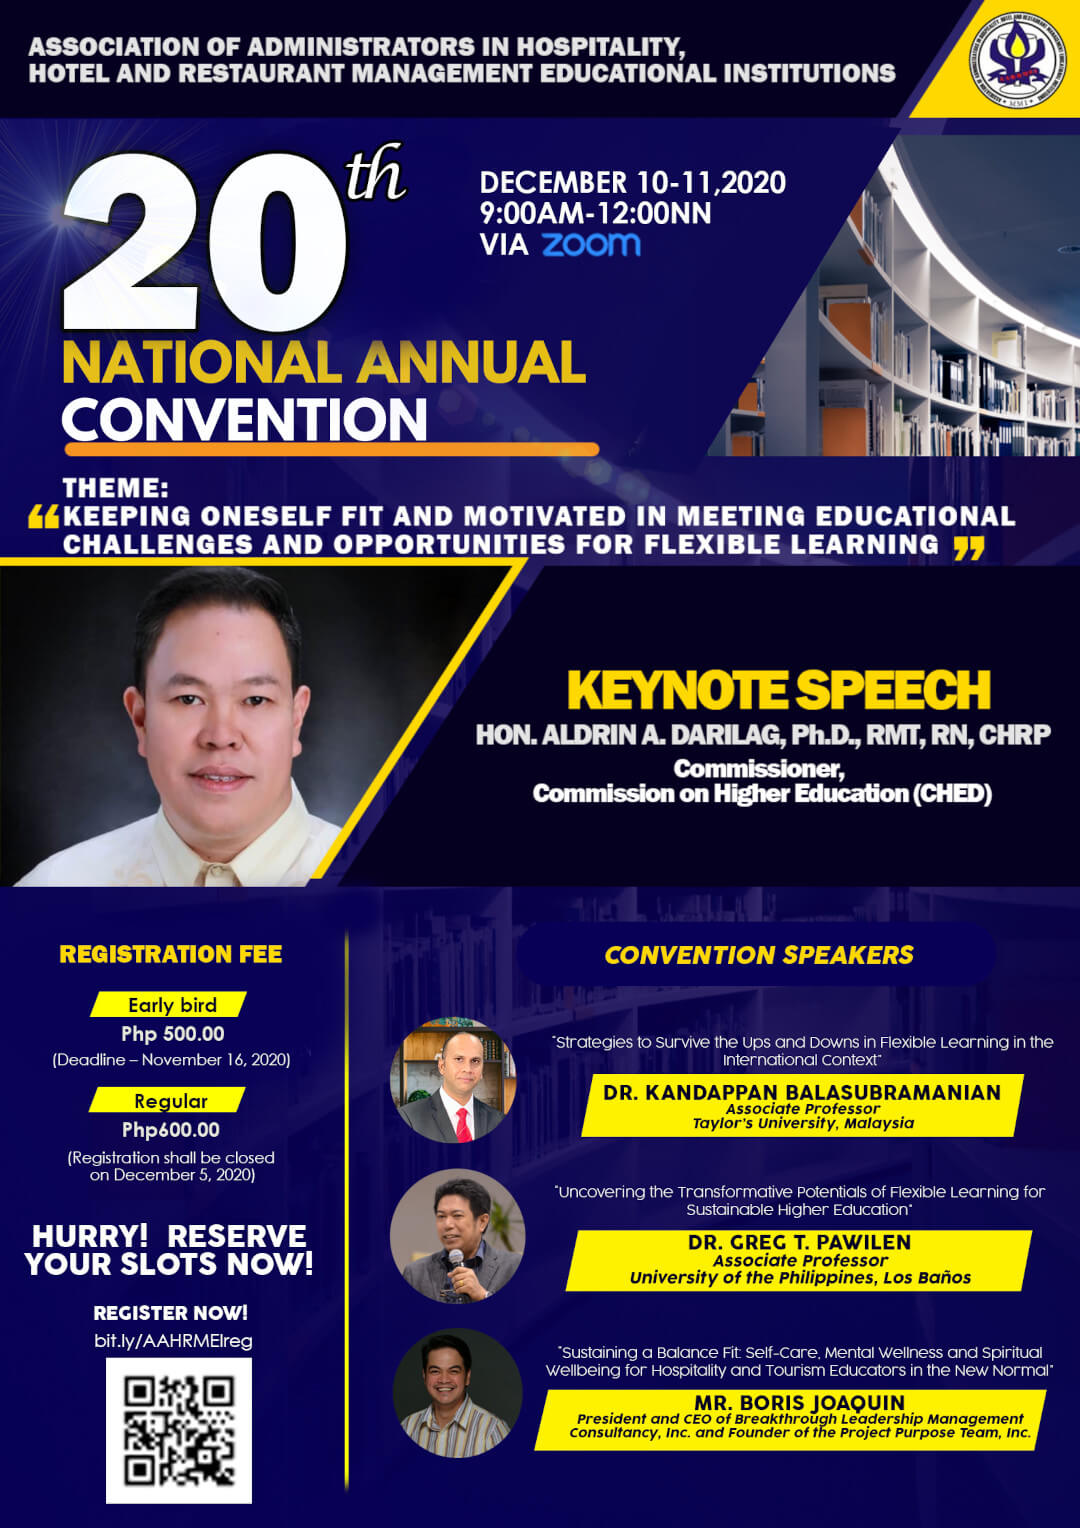 AAHRMEI 20th National Annual Convention